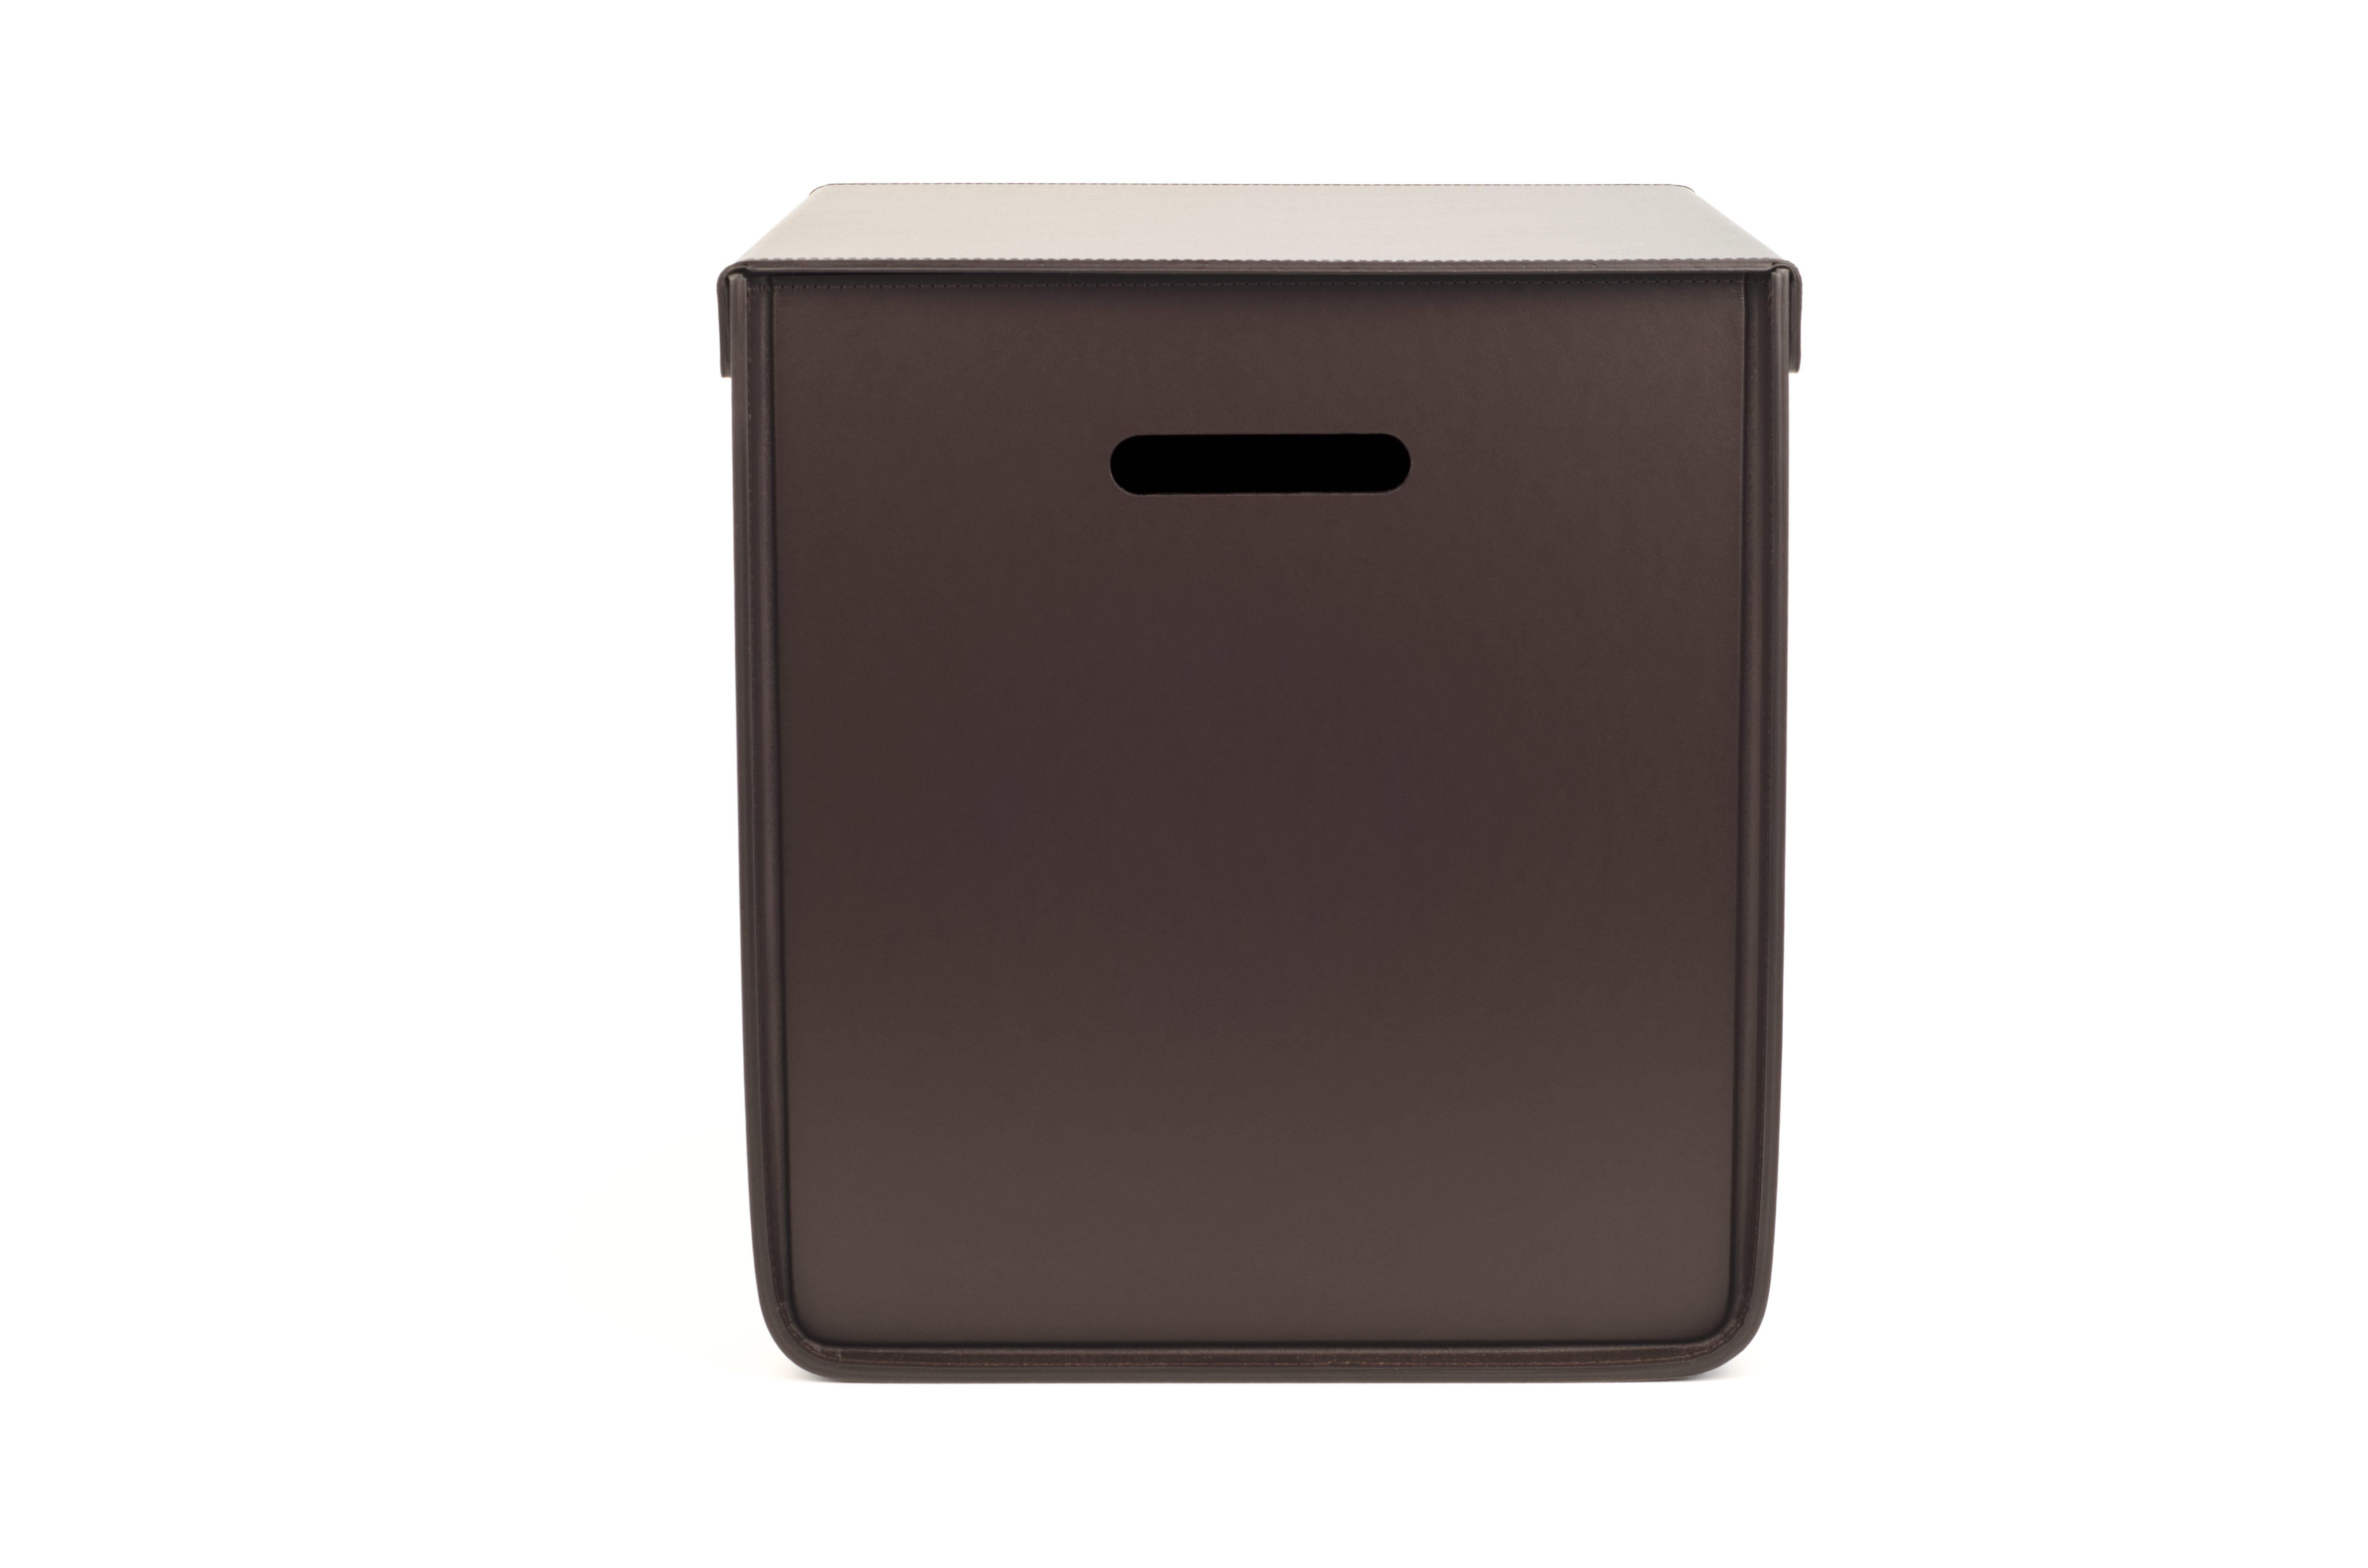 Un design épuré avec une fermeture magnétique spéciale.

La famille de trois boîtes Atena fabriquées en cuir régénéré écologique et lavable est parfaite pour une armoire moderne. Disponible dans une palette de couleurs naturelles.